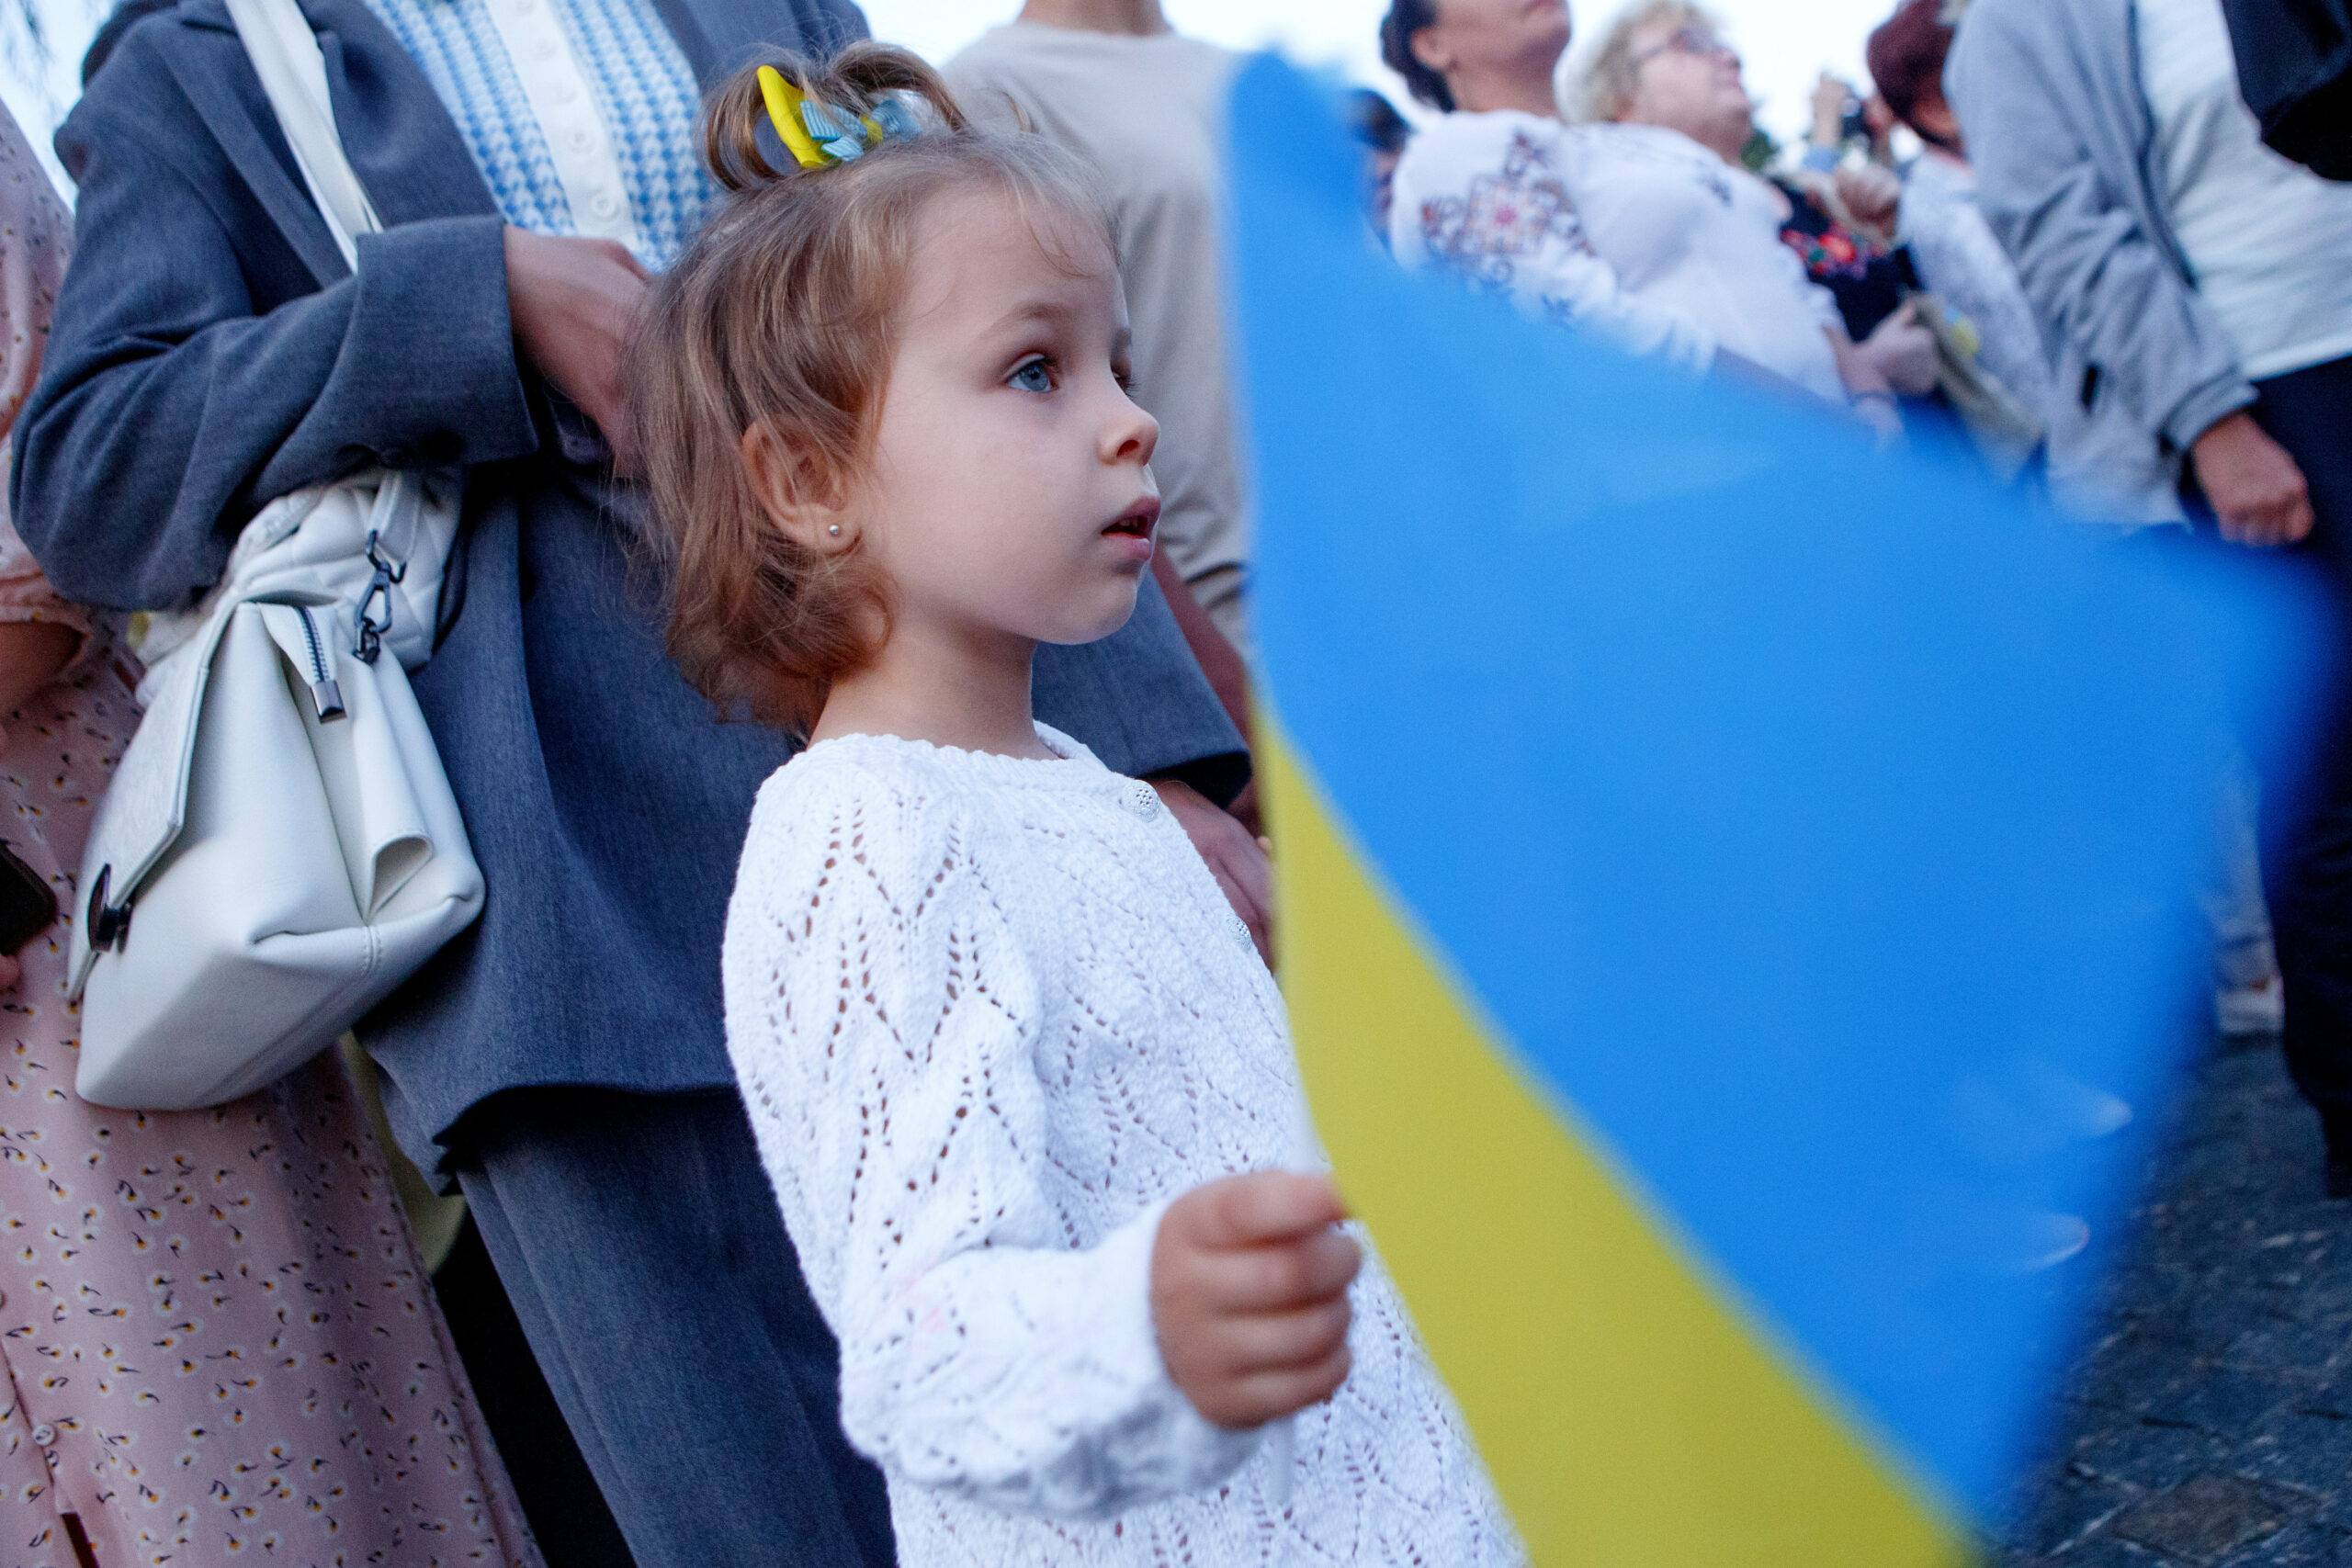 Празднование Дня независимости Украины в Ужгороде, 24 августа 2022 года. Фото Serhii Hudak/Ukrinform via ZUMA Press Wire/Scanpix/LETA